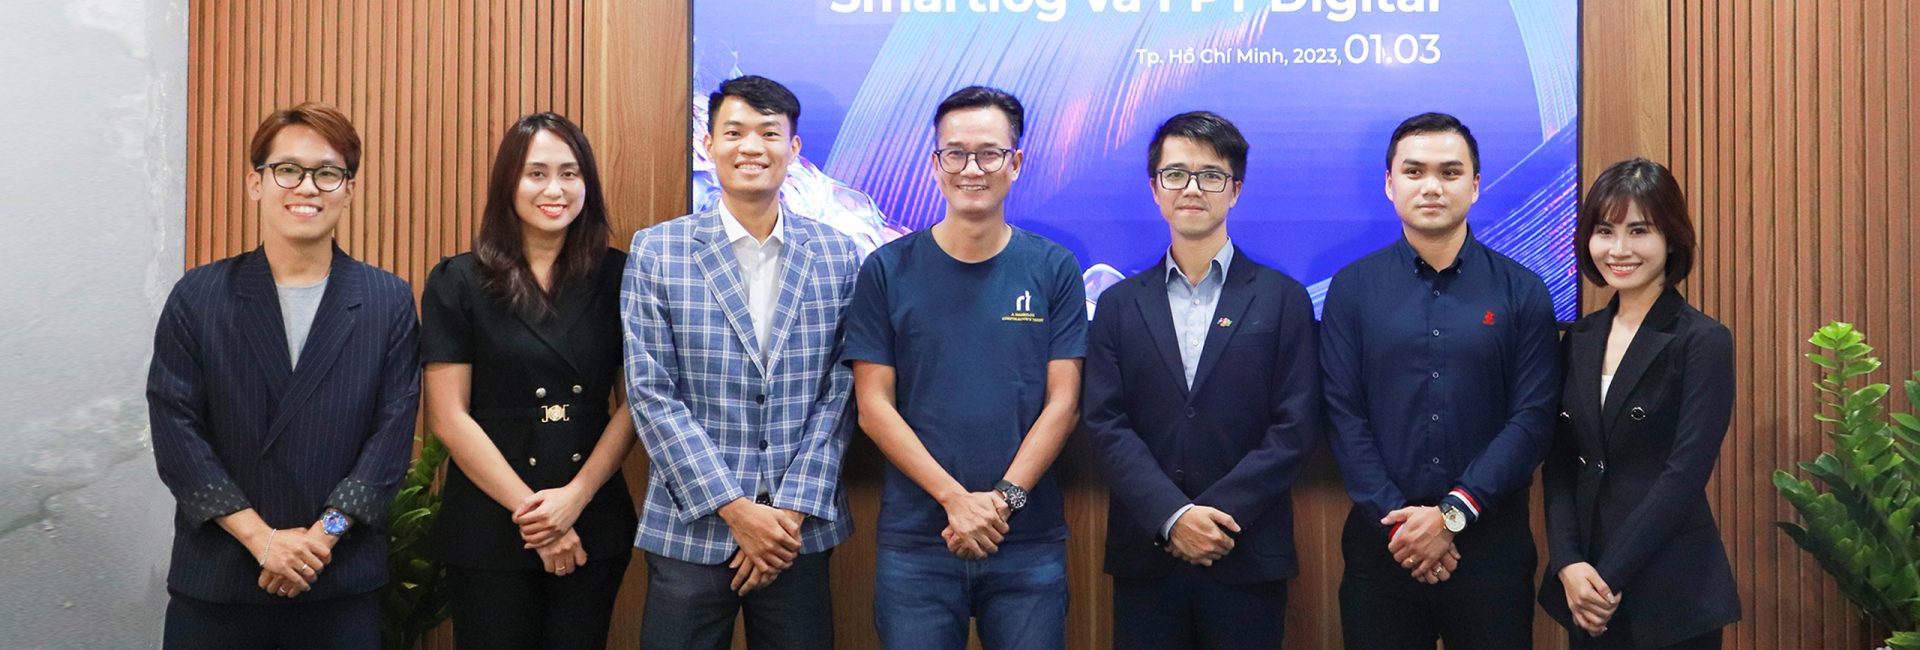 FPT Digital và Smartlog Việt Nam chính thức hợp tác, cùng nhau giúp các doanh nghiệp chuyển đổi số cho hoạt động vận hành logistics